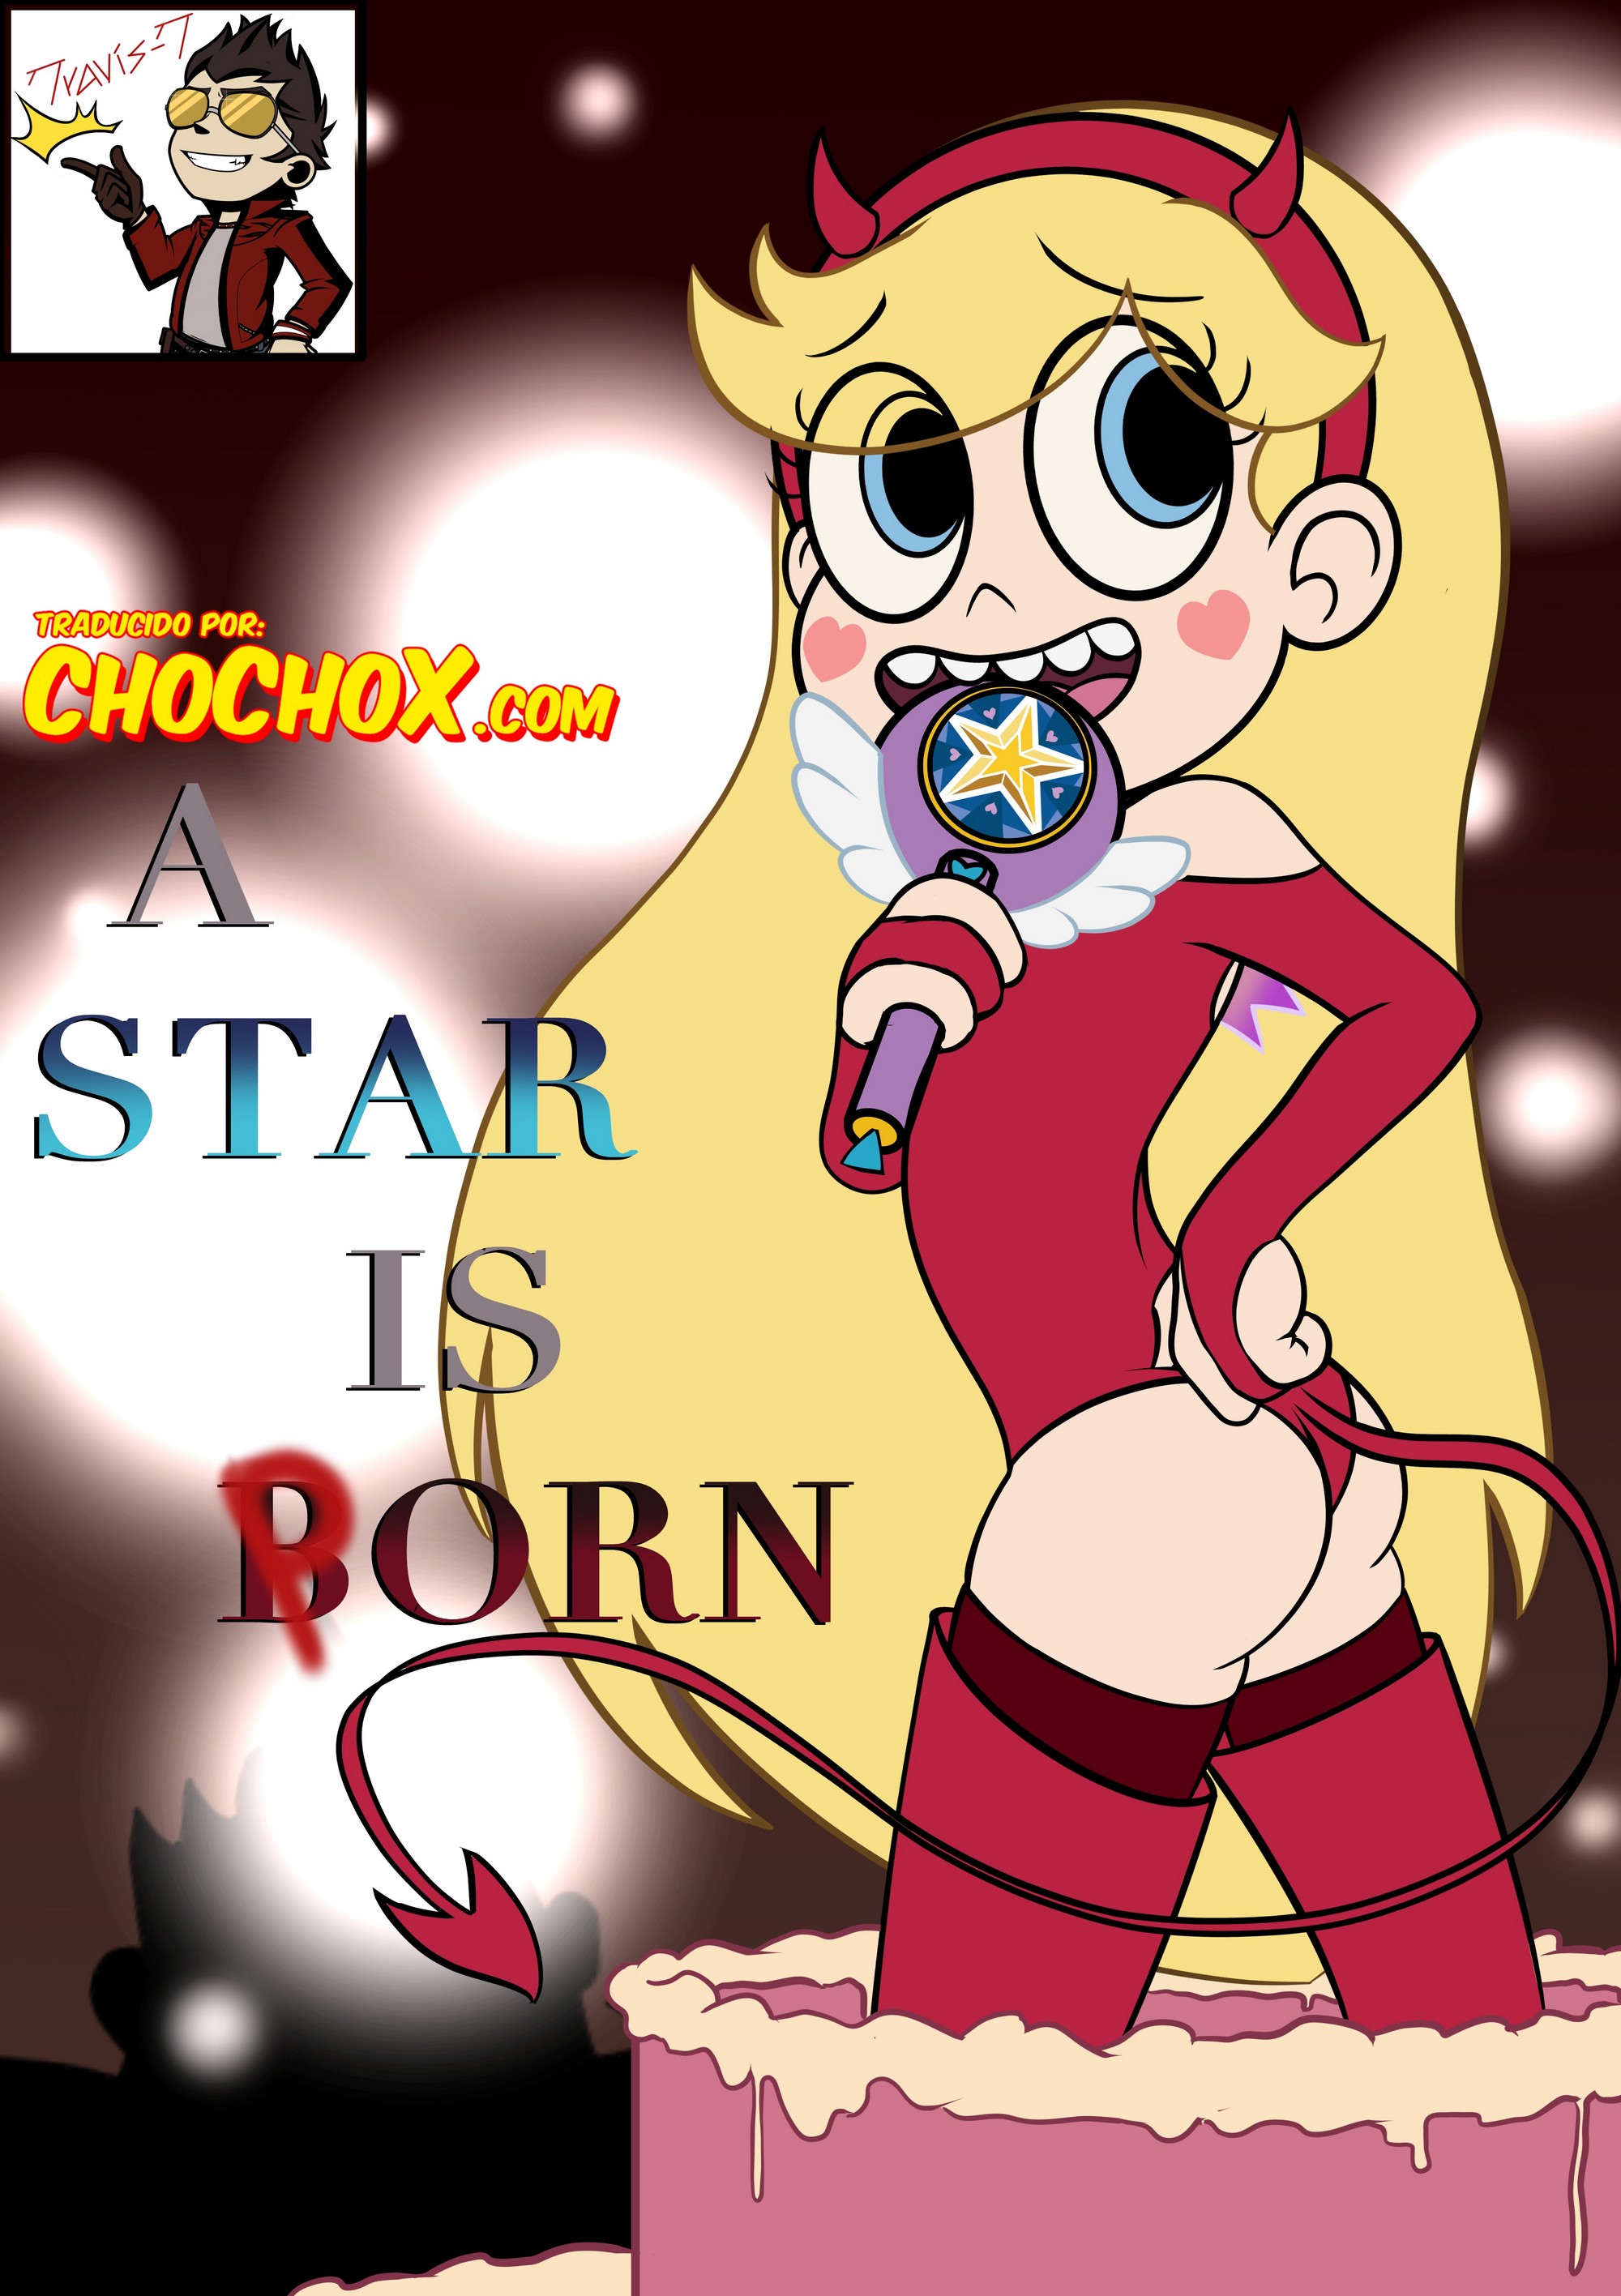 A Star is Born – TravisT - da0dfdecf669ae89b895a6928c63c748